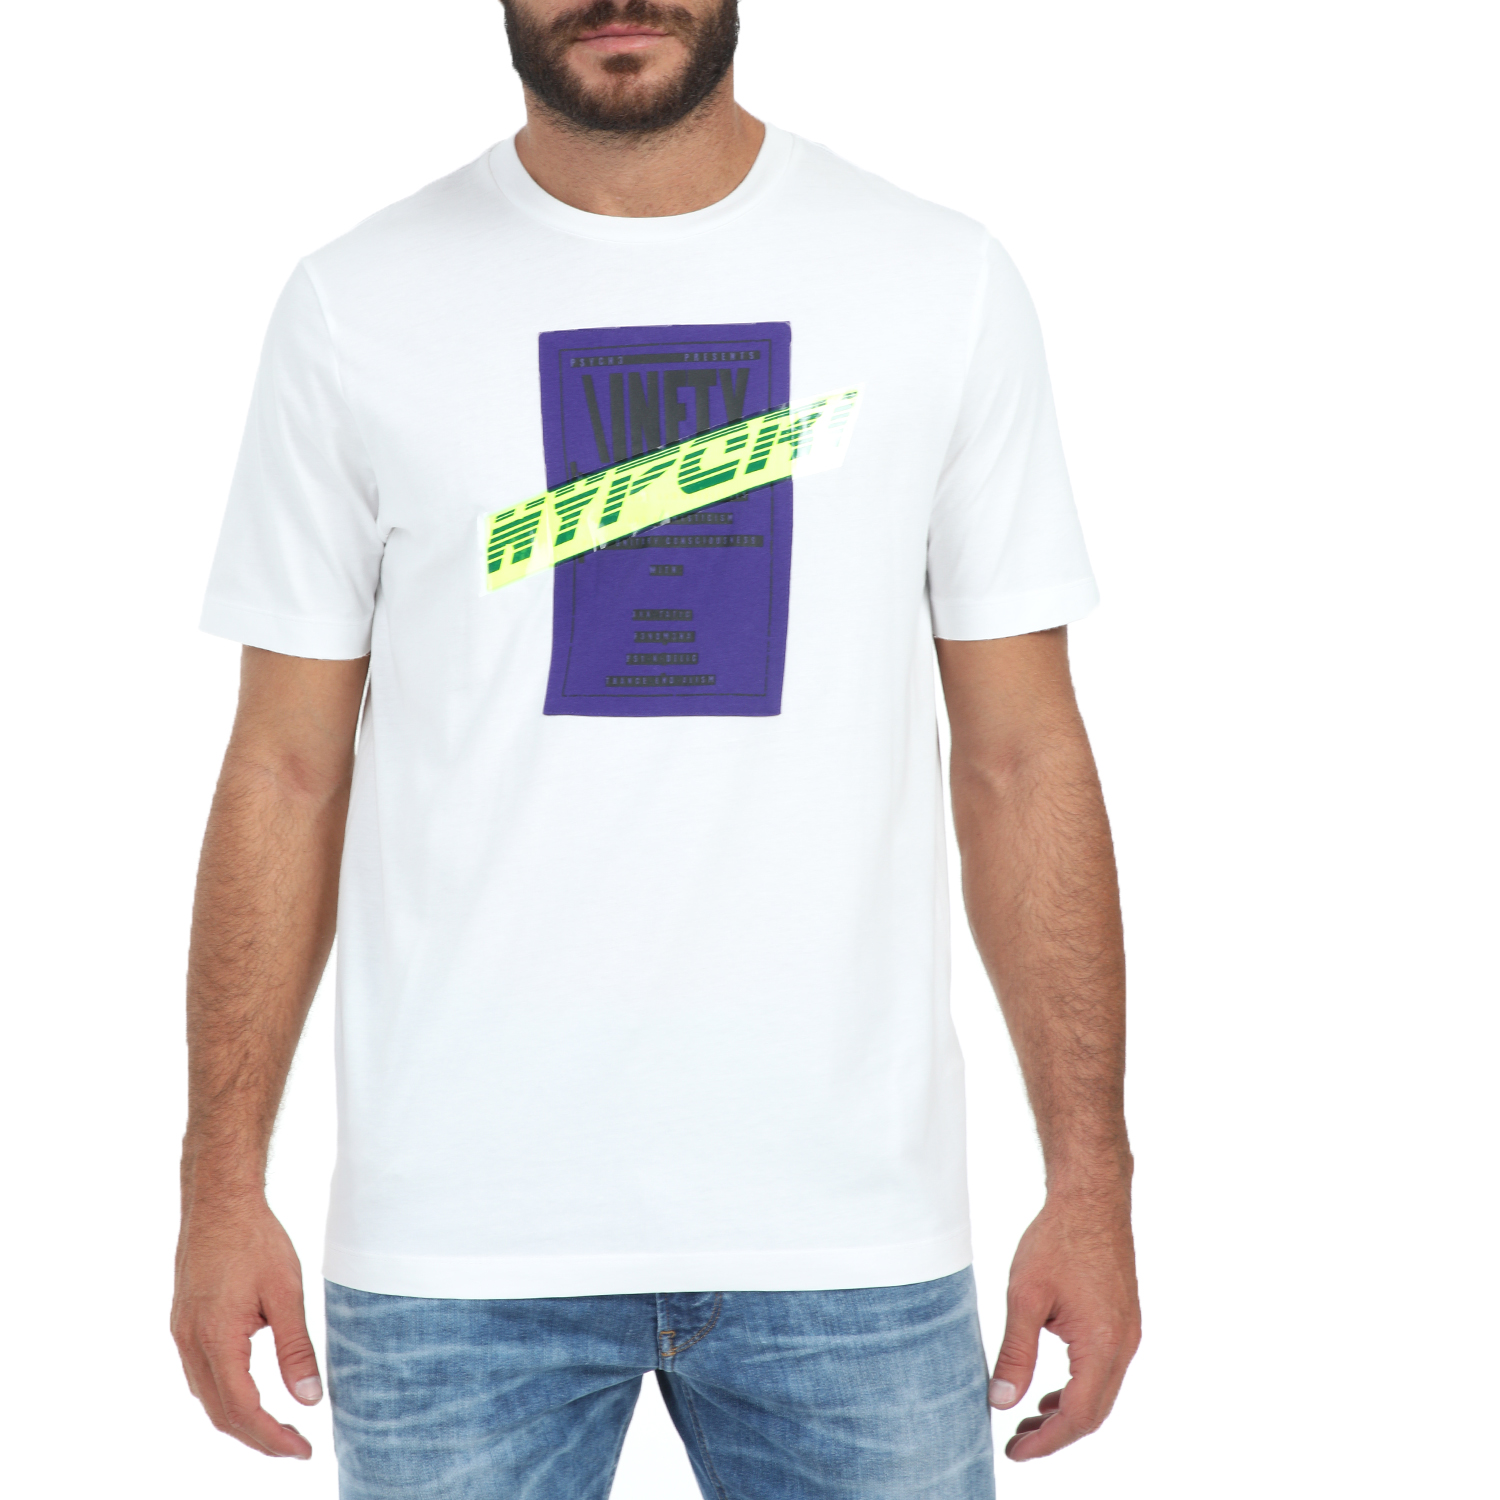 Ανδρικά/Ρούχα/Μπλούζες/Κοντομάνικες DIESEL - Ανδρικό t-shirt DIESEL T-JUST-Y7 MAGLIETTA λευκό